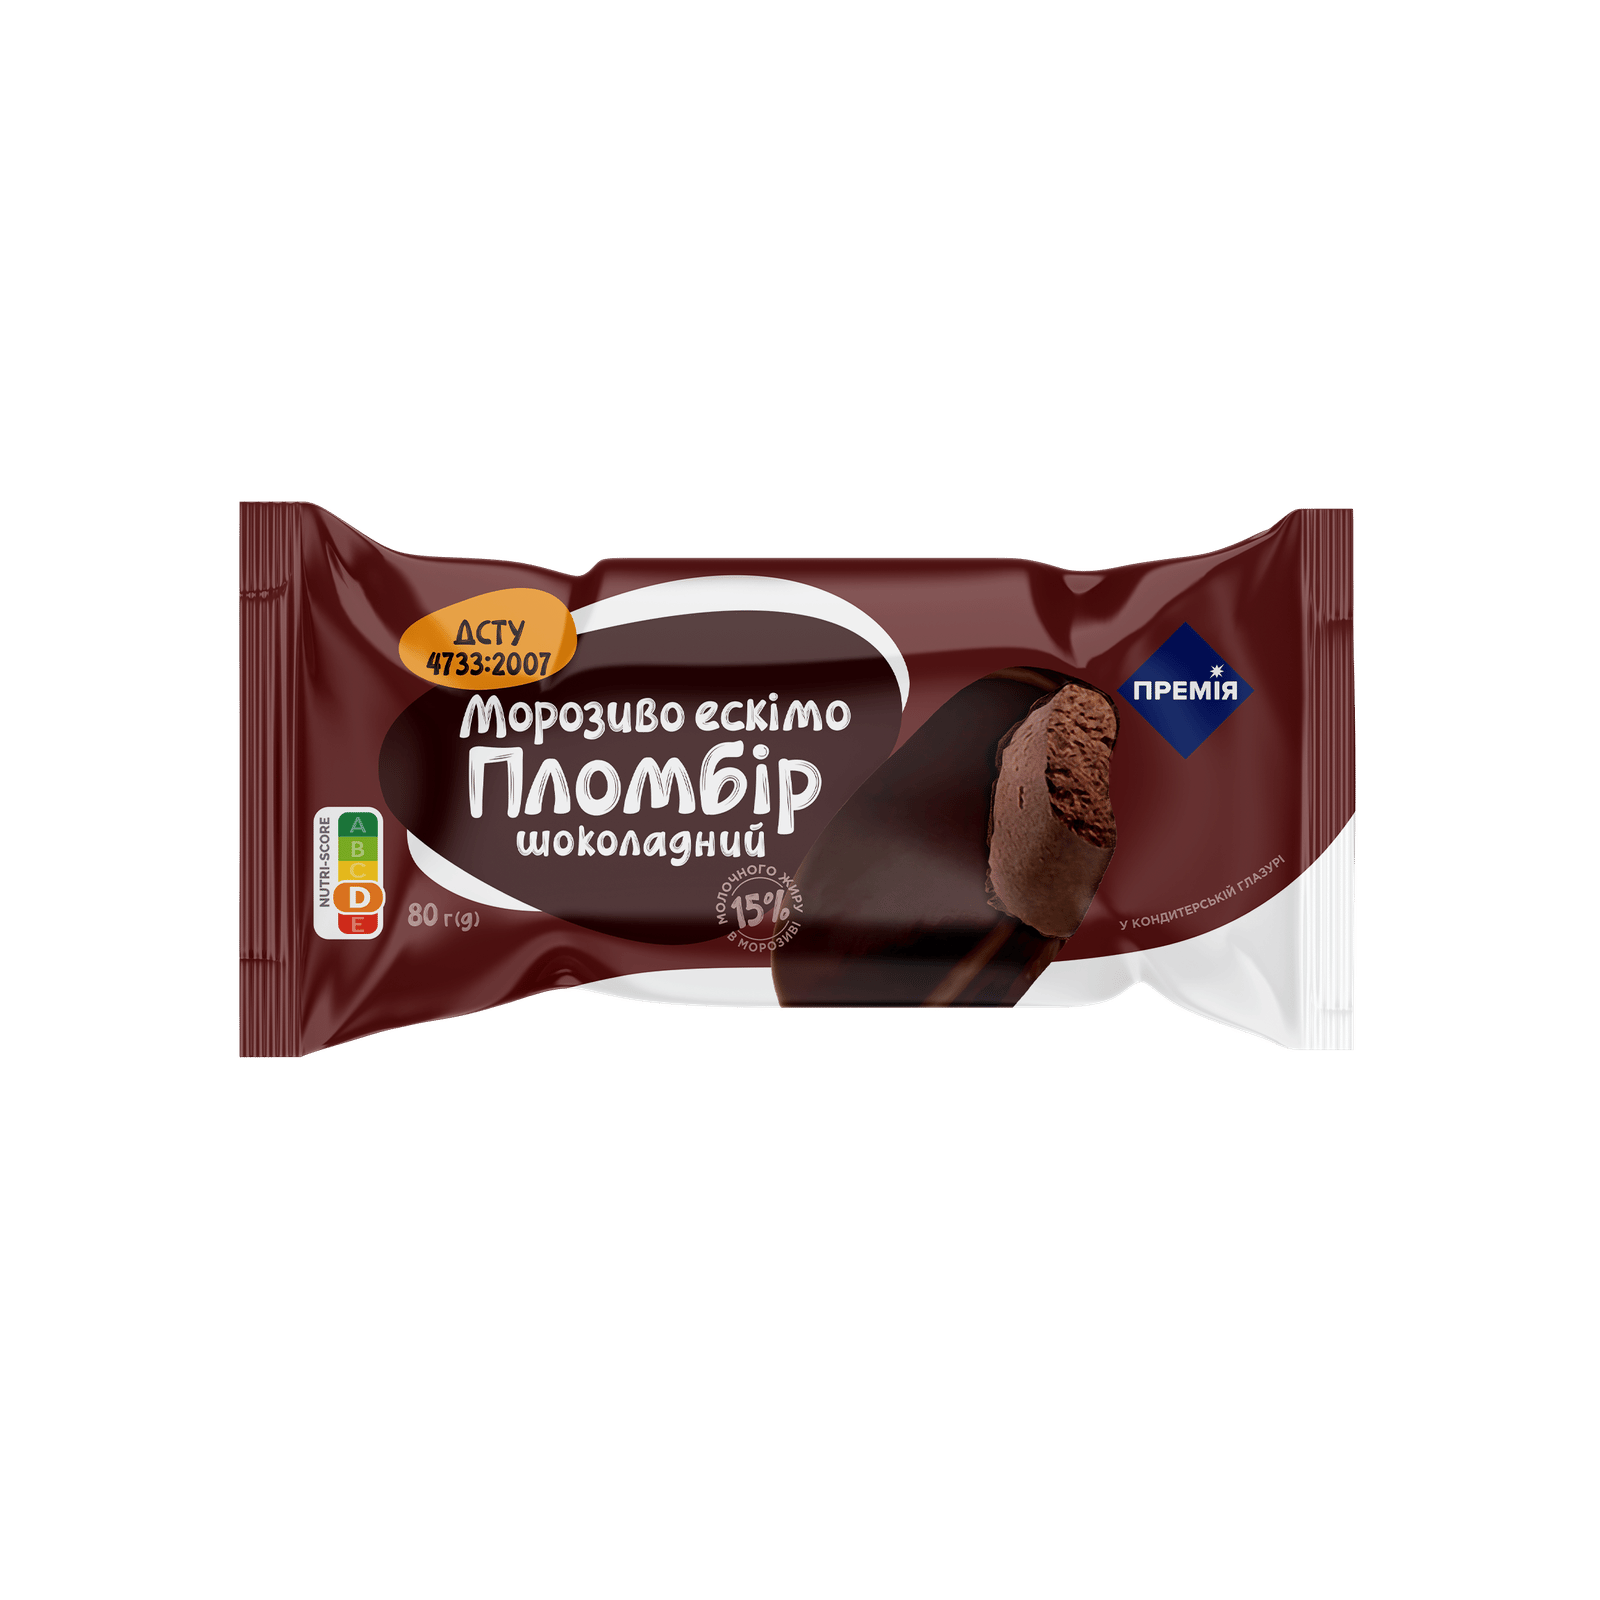 Морозиво шоколадний пломбір «Премія»® у кондитерській глазурі - 1